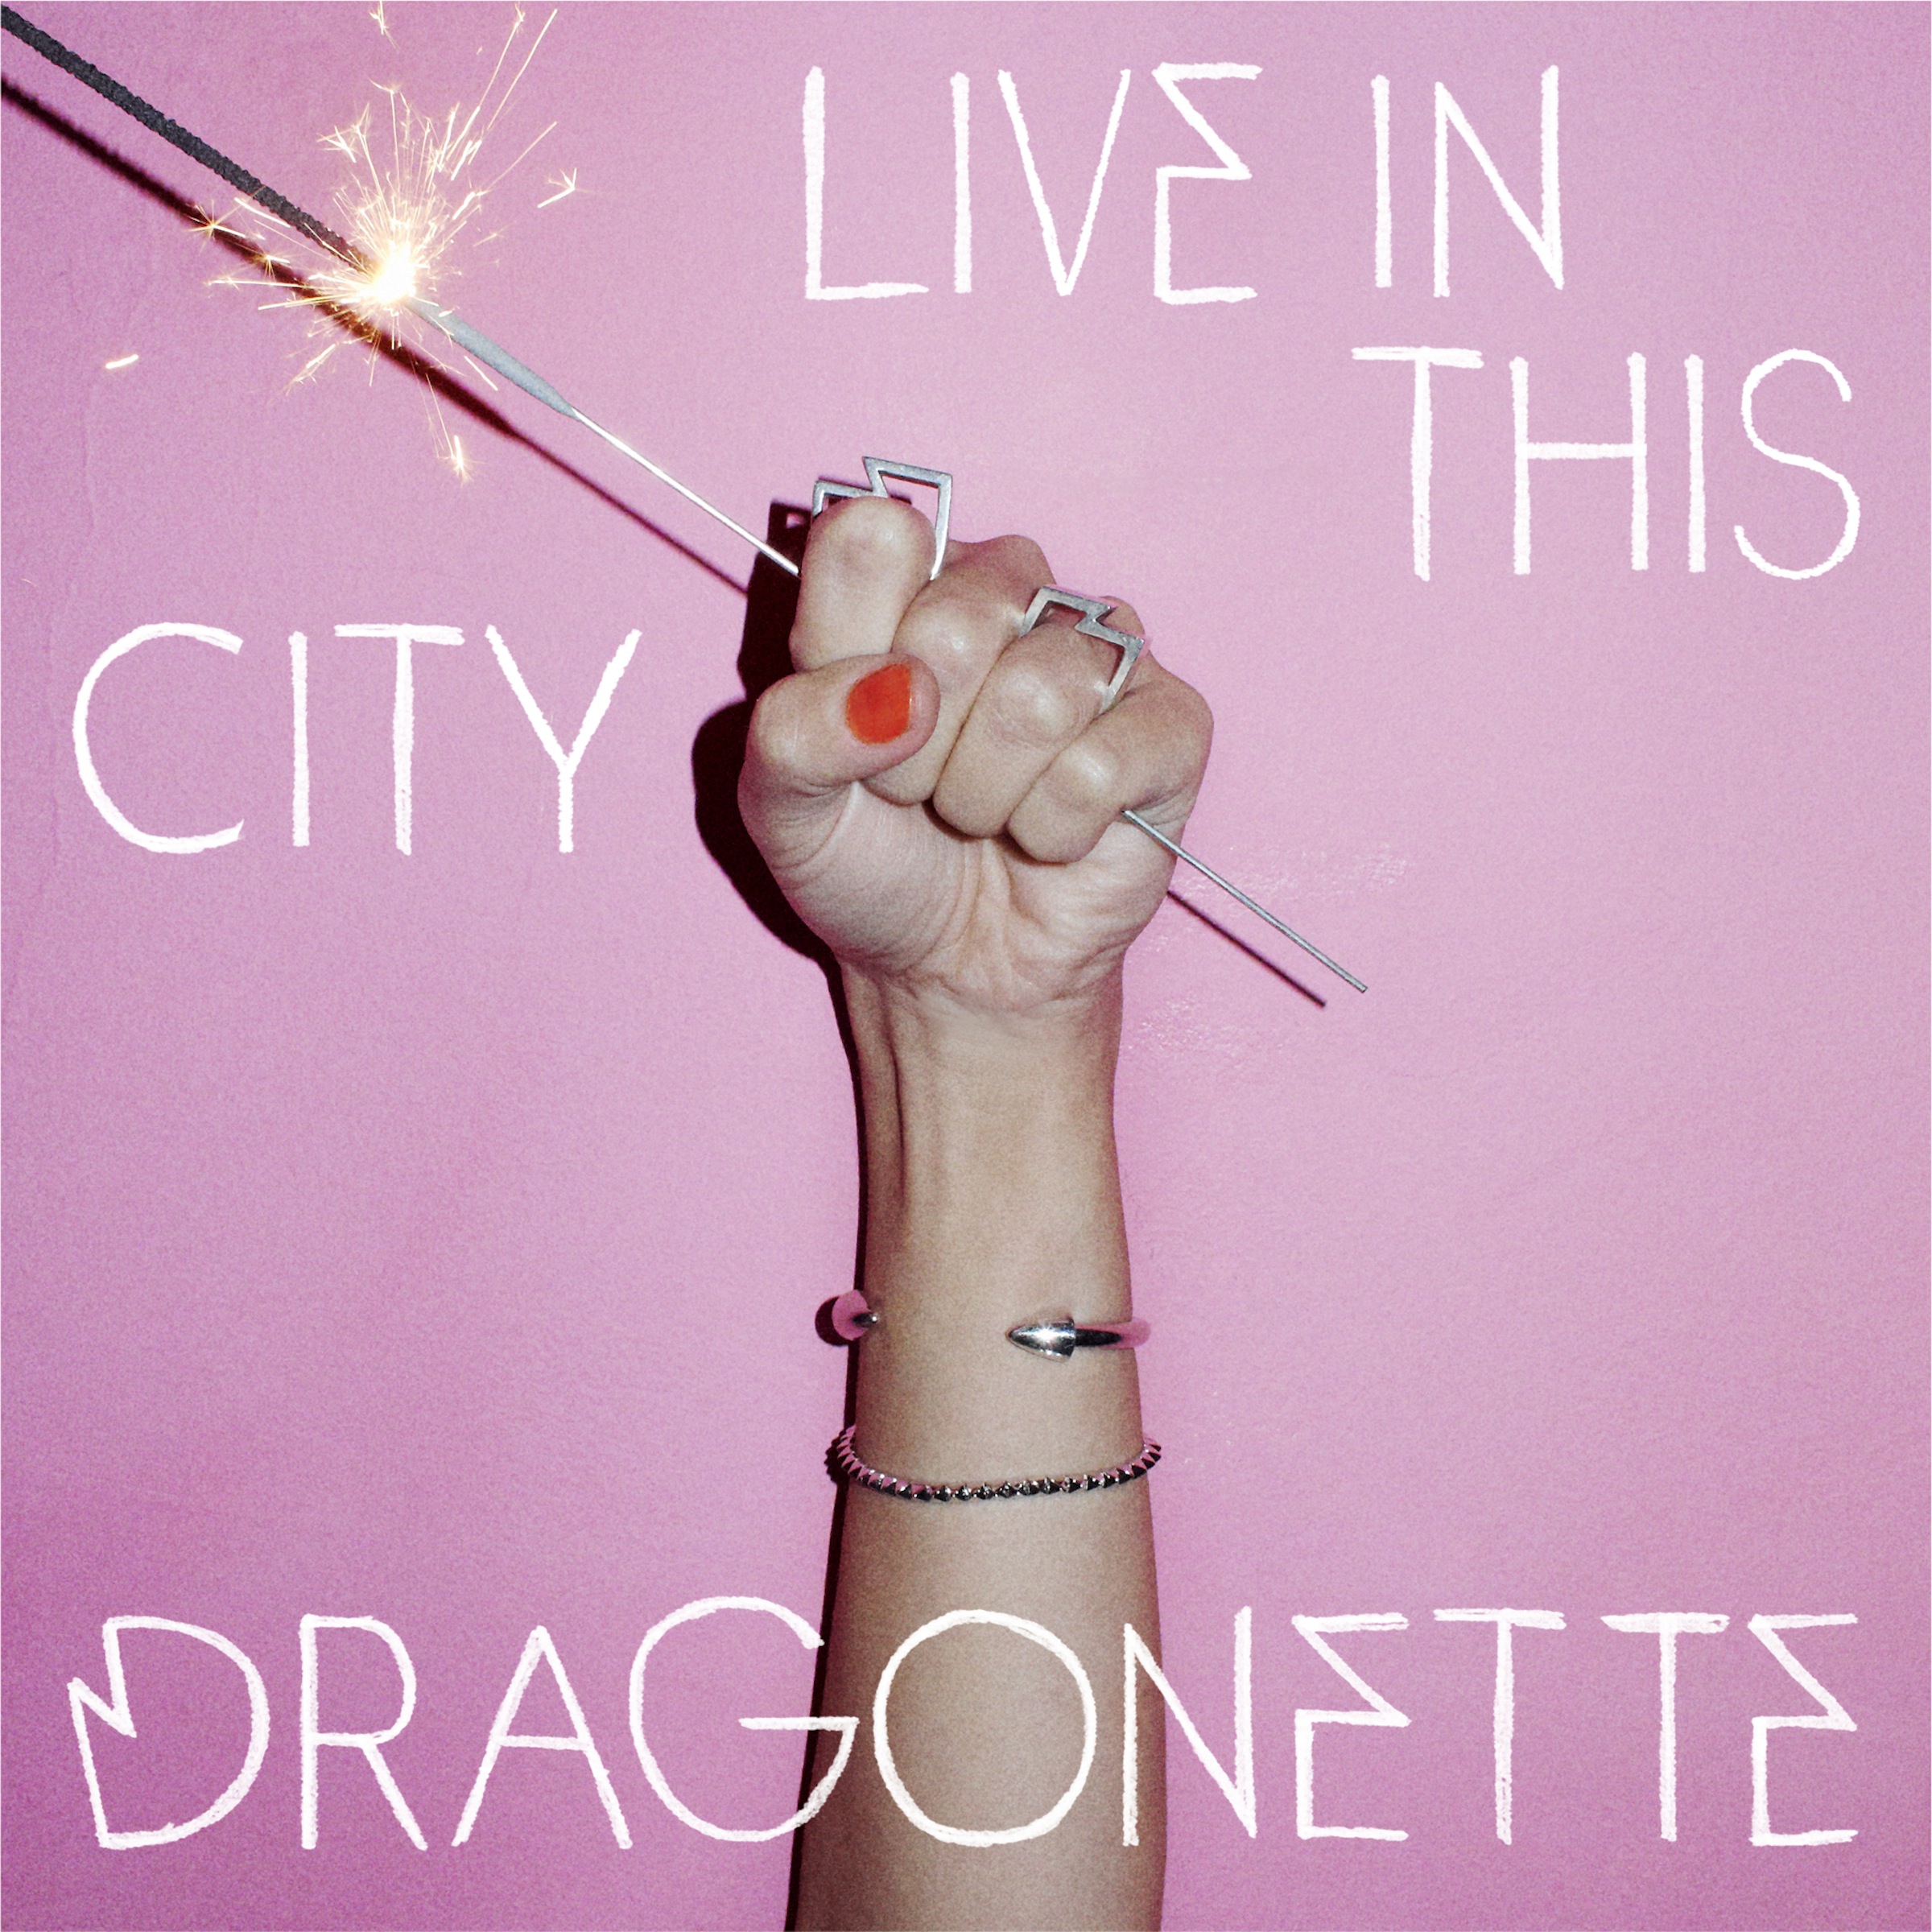 Dragonette. 91. Dragonette. This city life